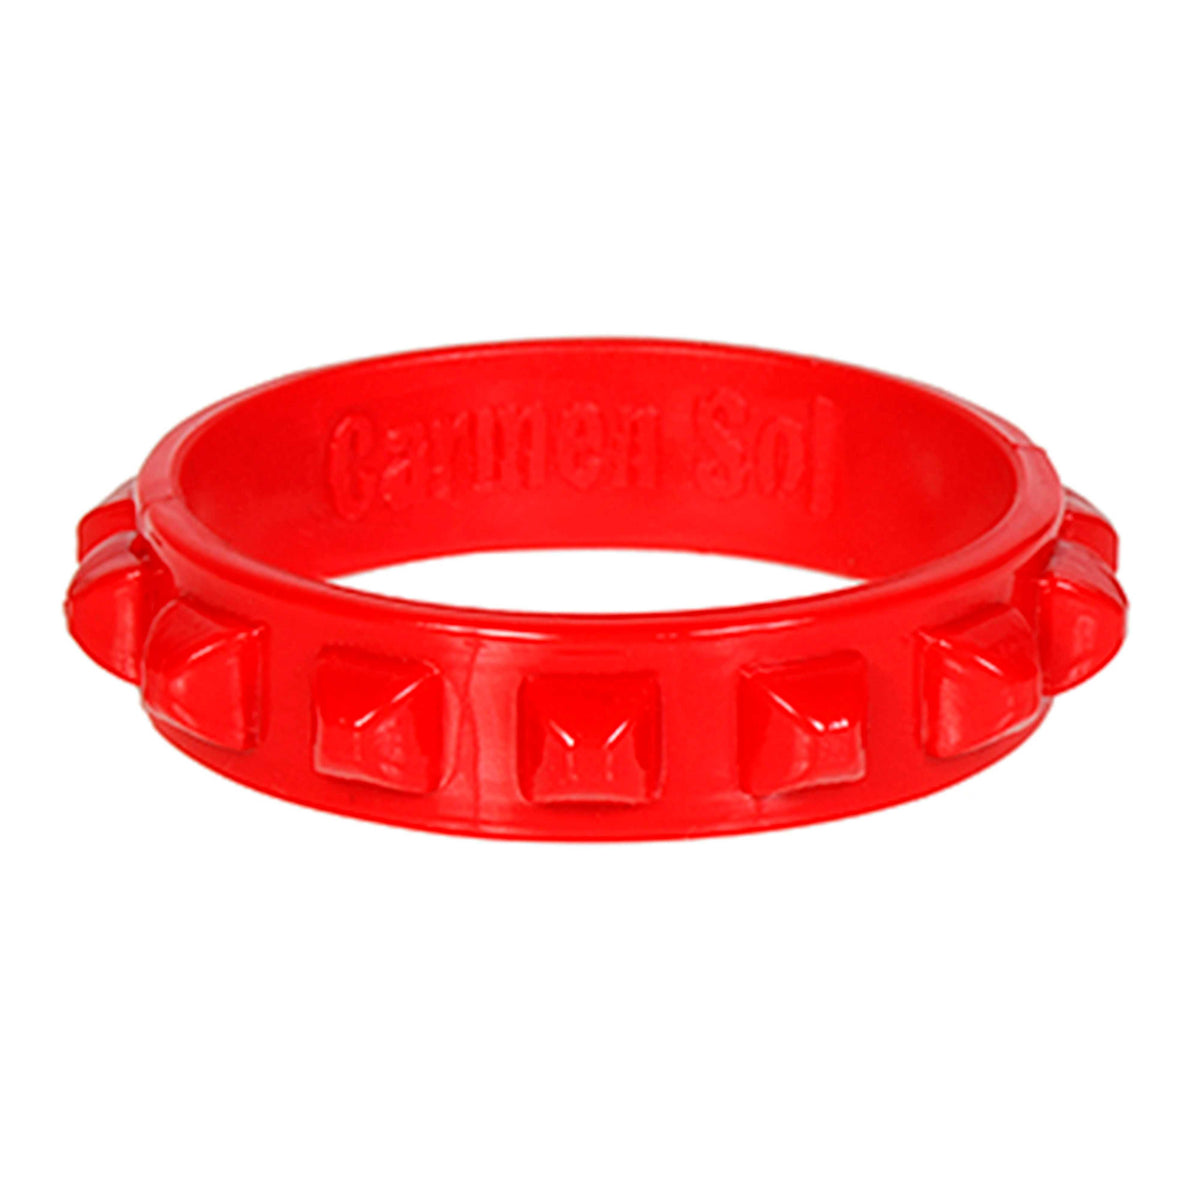 Red women bracelets in plastic stackable